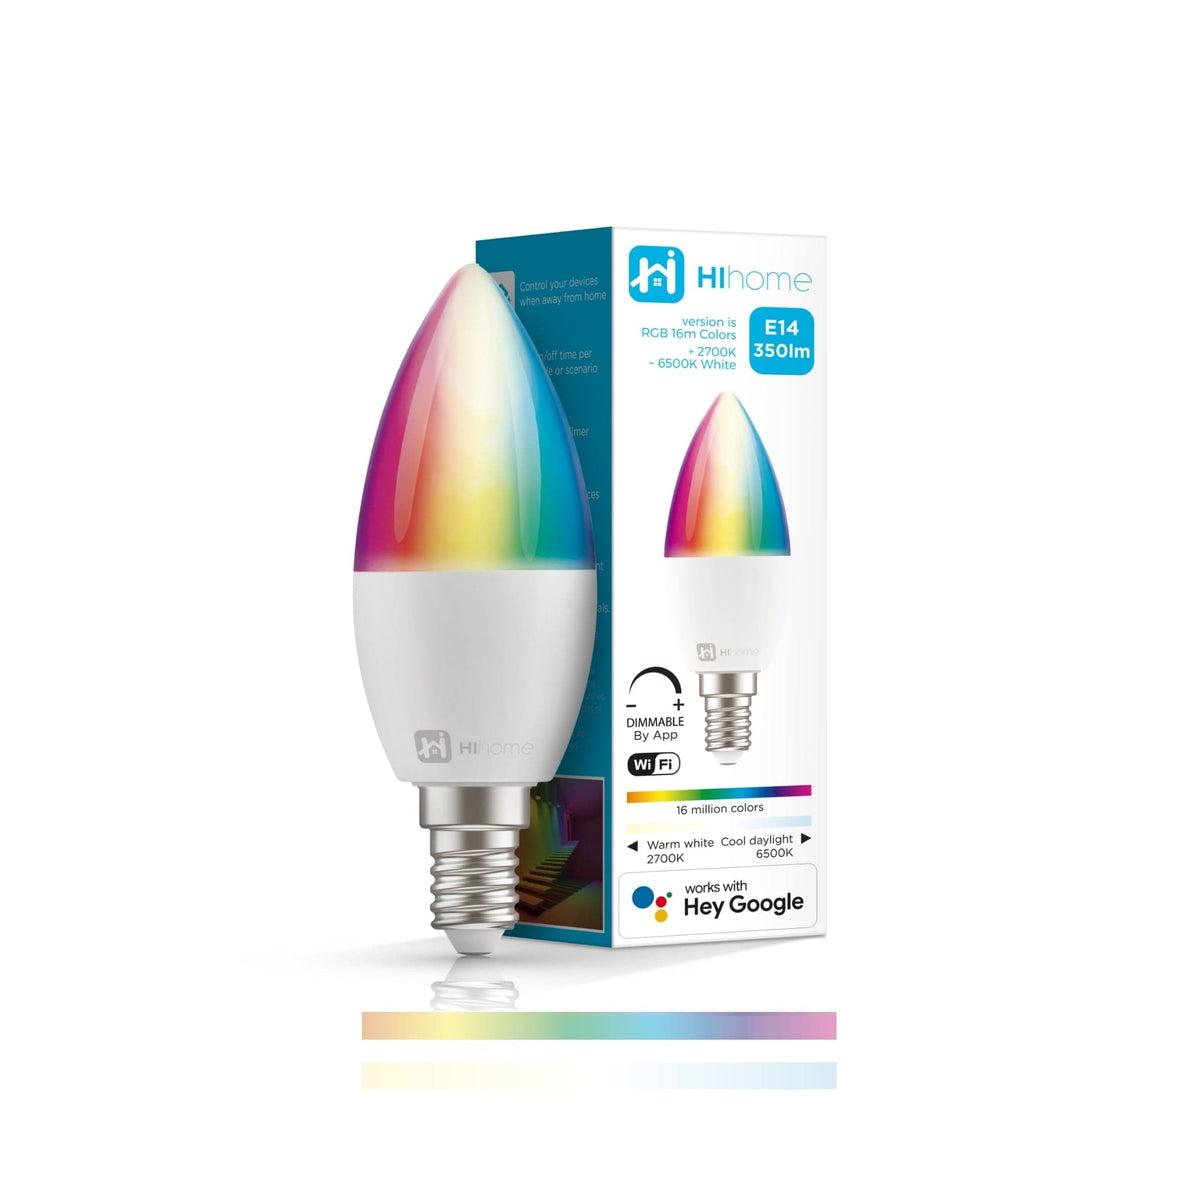 Hihome Smart LED WiFi pære E14 Gen.2 RGB 16M farver + Varm hvid 2700K til cool hvid 6500K